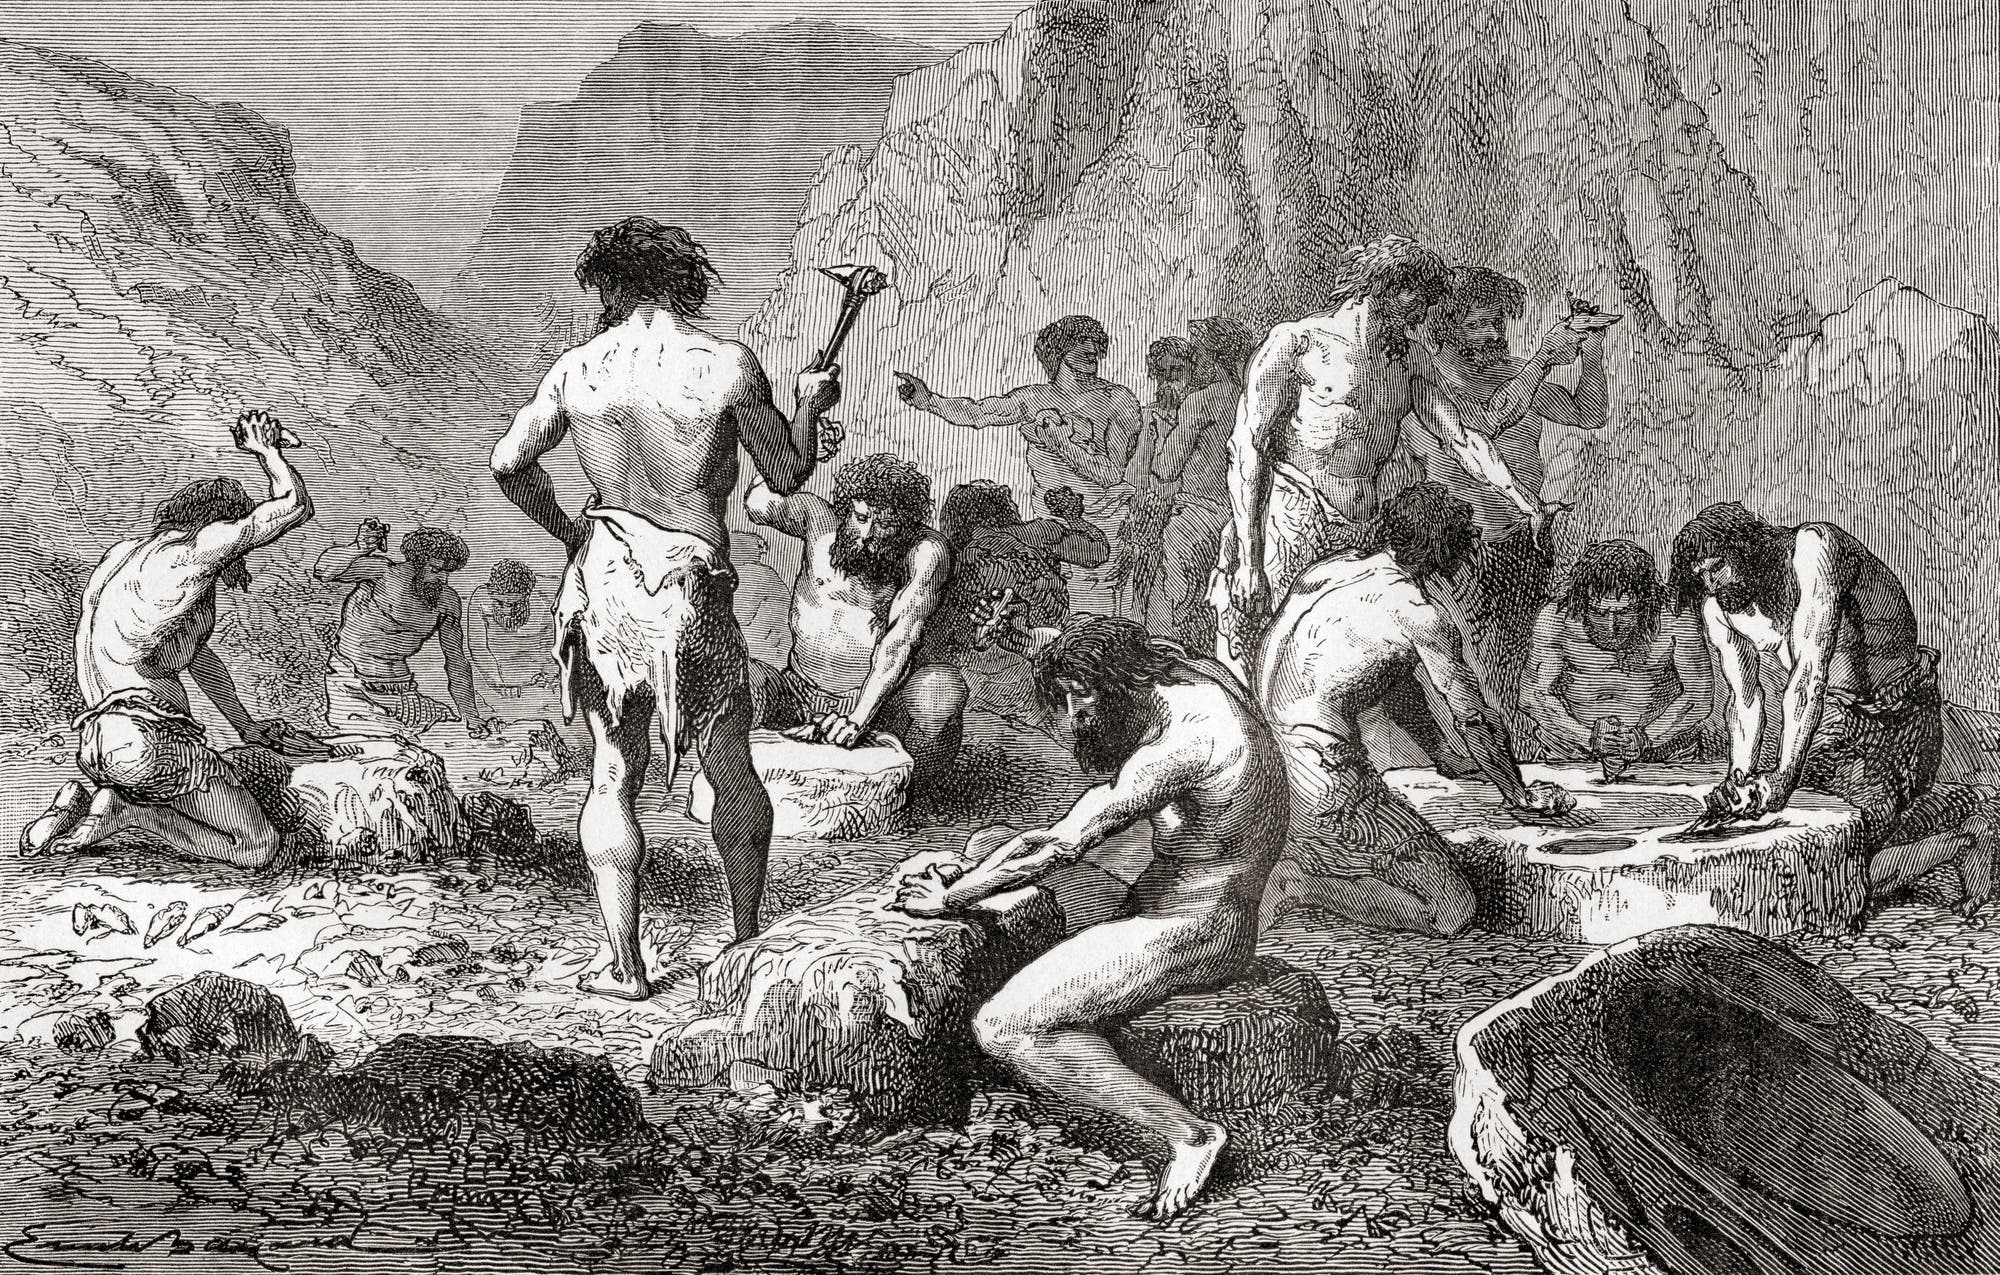 Feuersteinwerkstatt von Le Grand-Pressigny in einer Illustration aus dem Werk »L'homme primitif« von 1870.